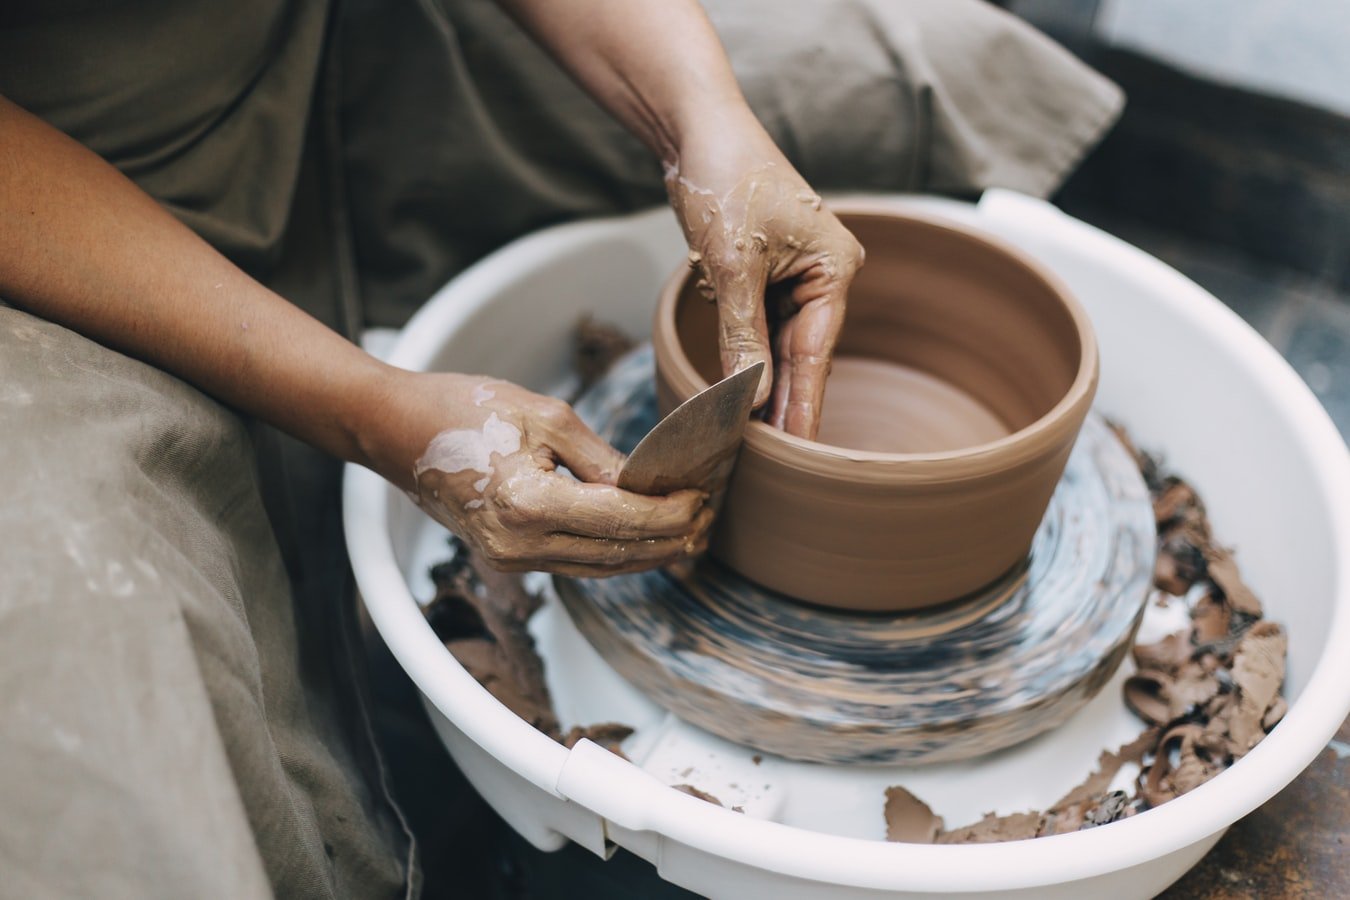 Making pottery | Source: Unsplash